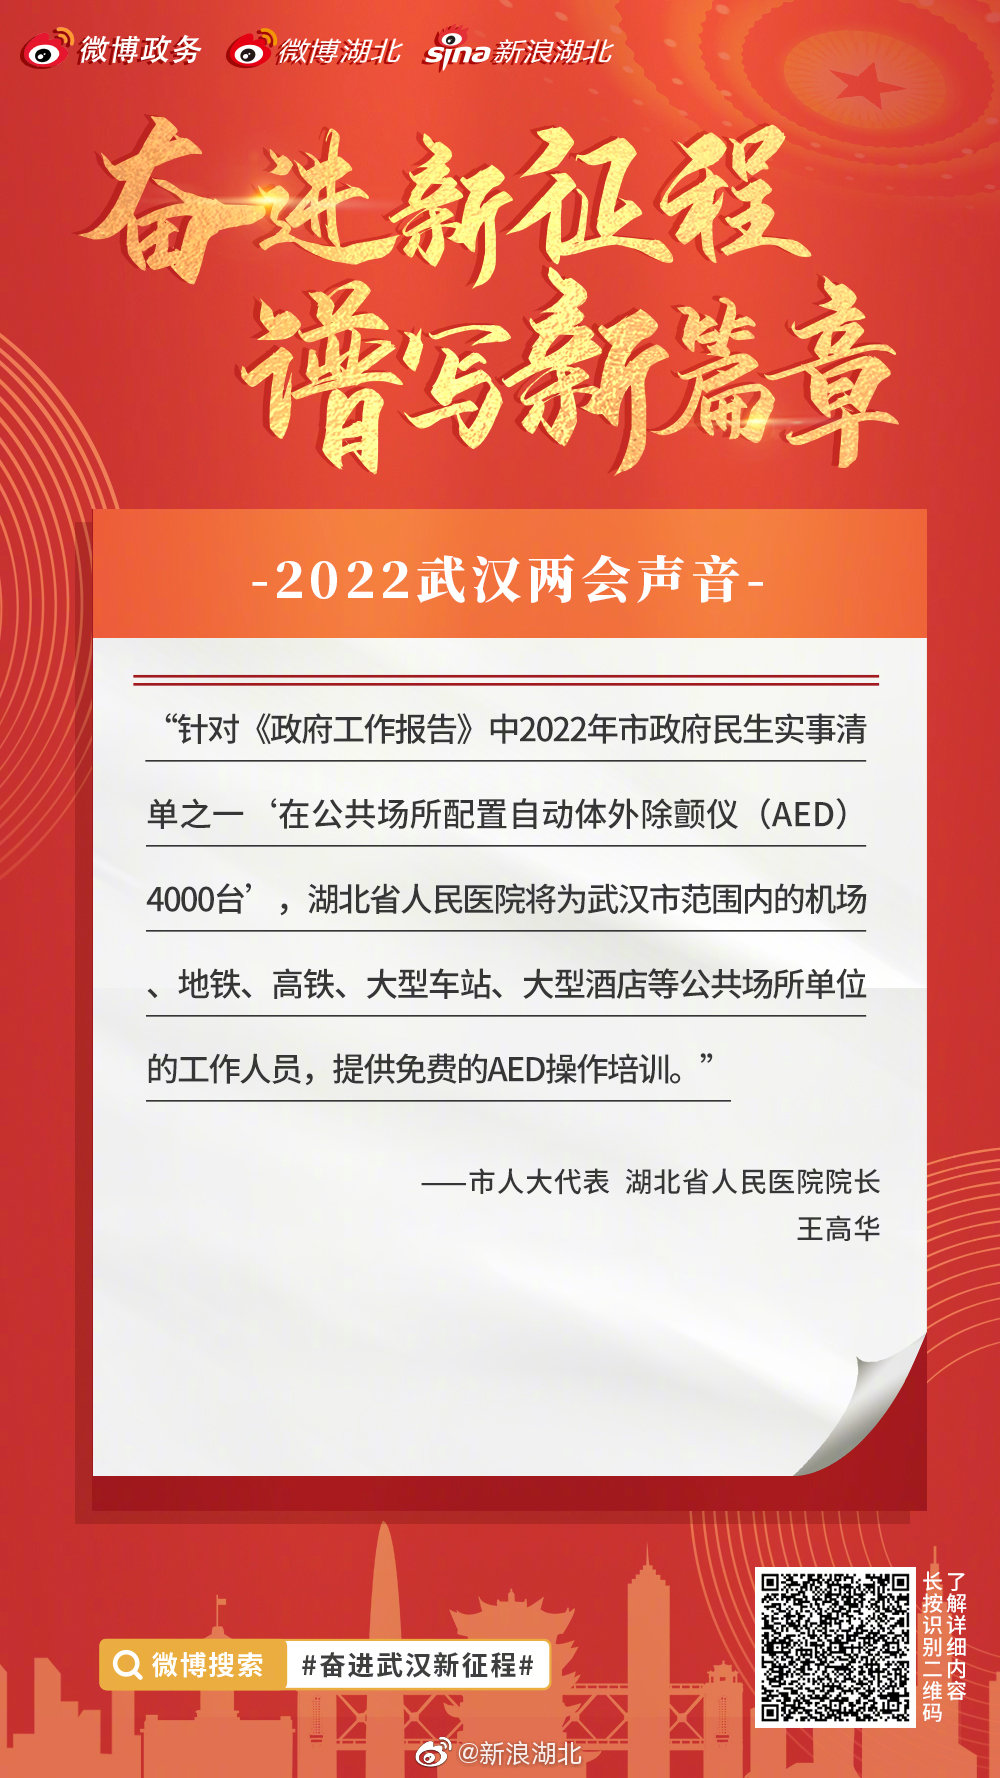 今年武汉全市配置4000台AED